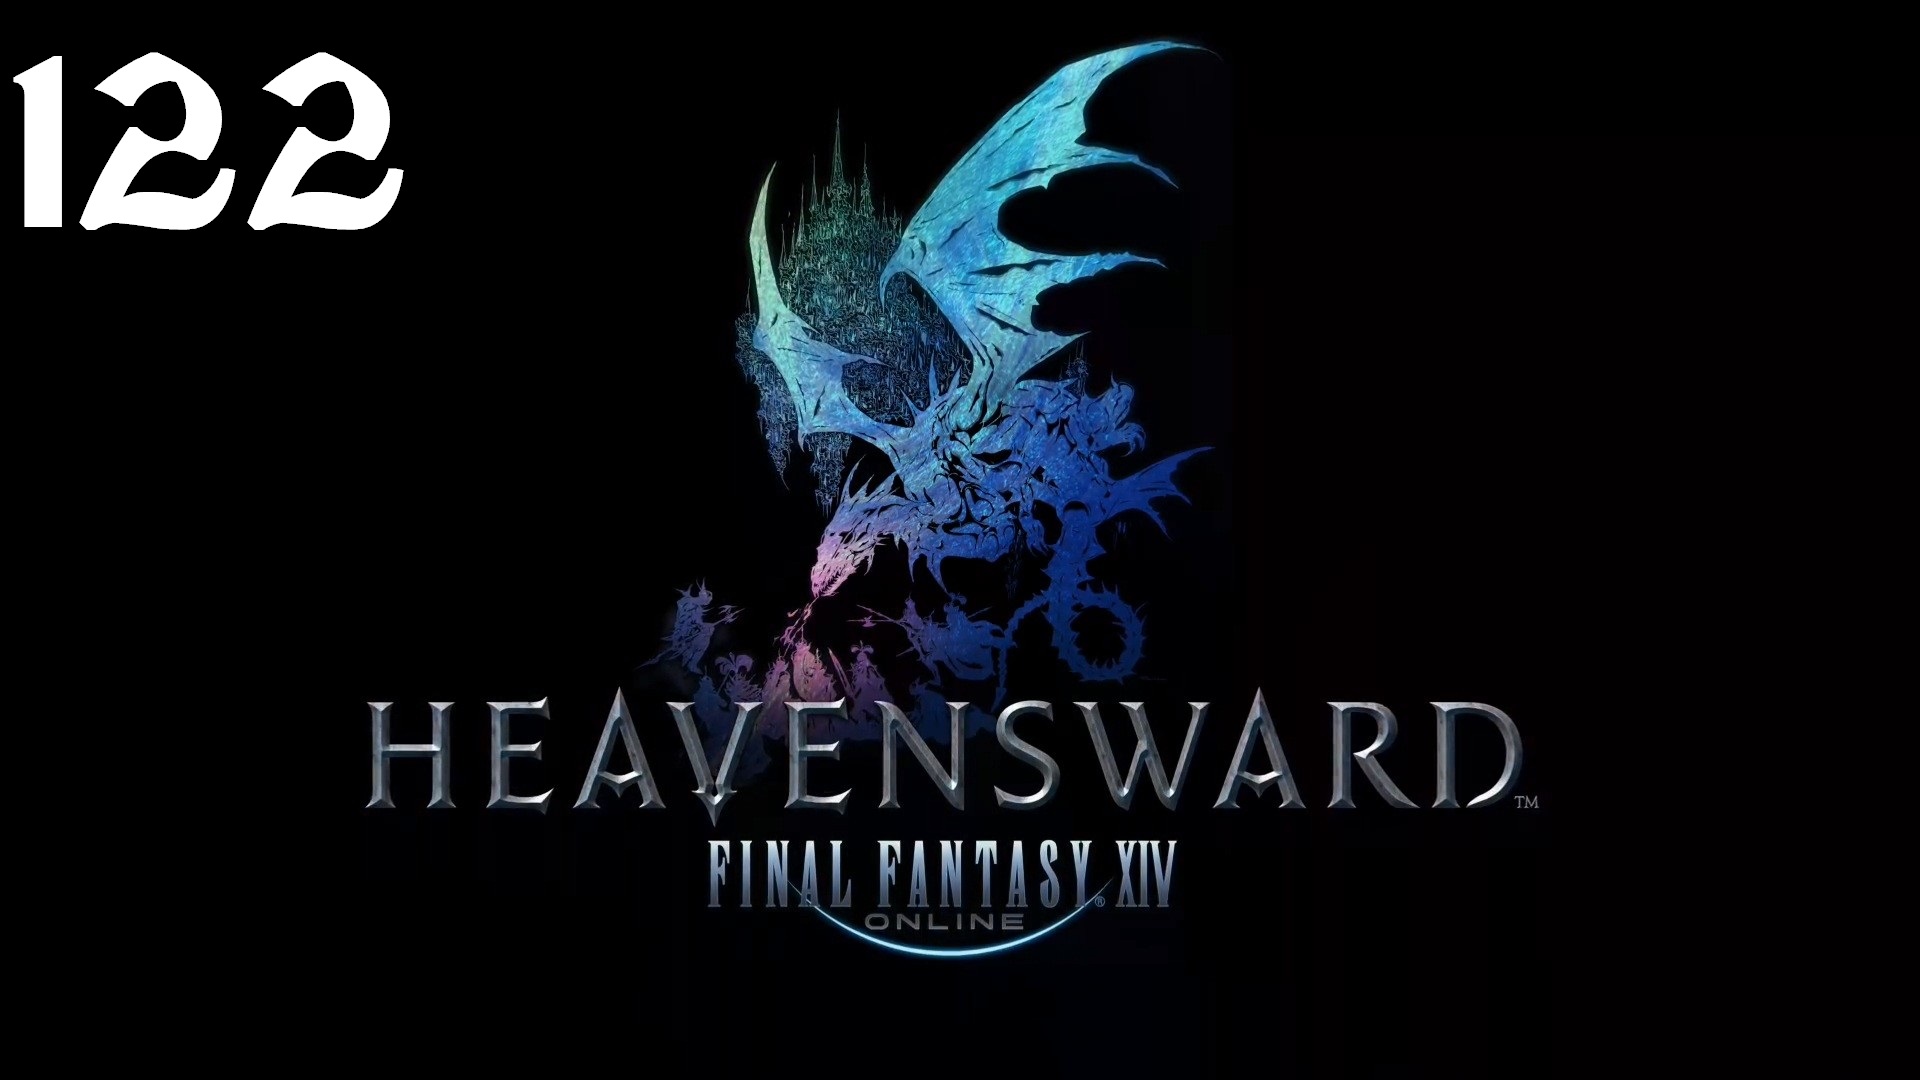 Final Fantasy XIV | Heavensward | Прохождение | PC | Часть 122 | Firmament и Containment Bay S1T7